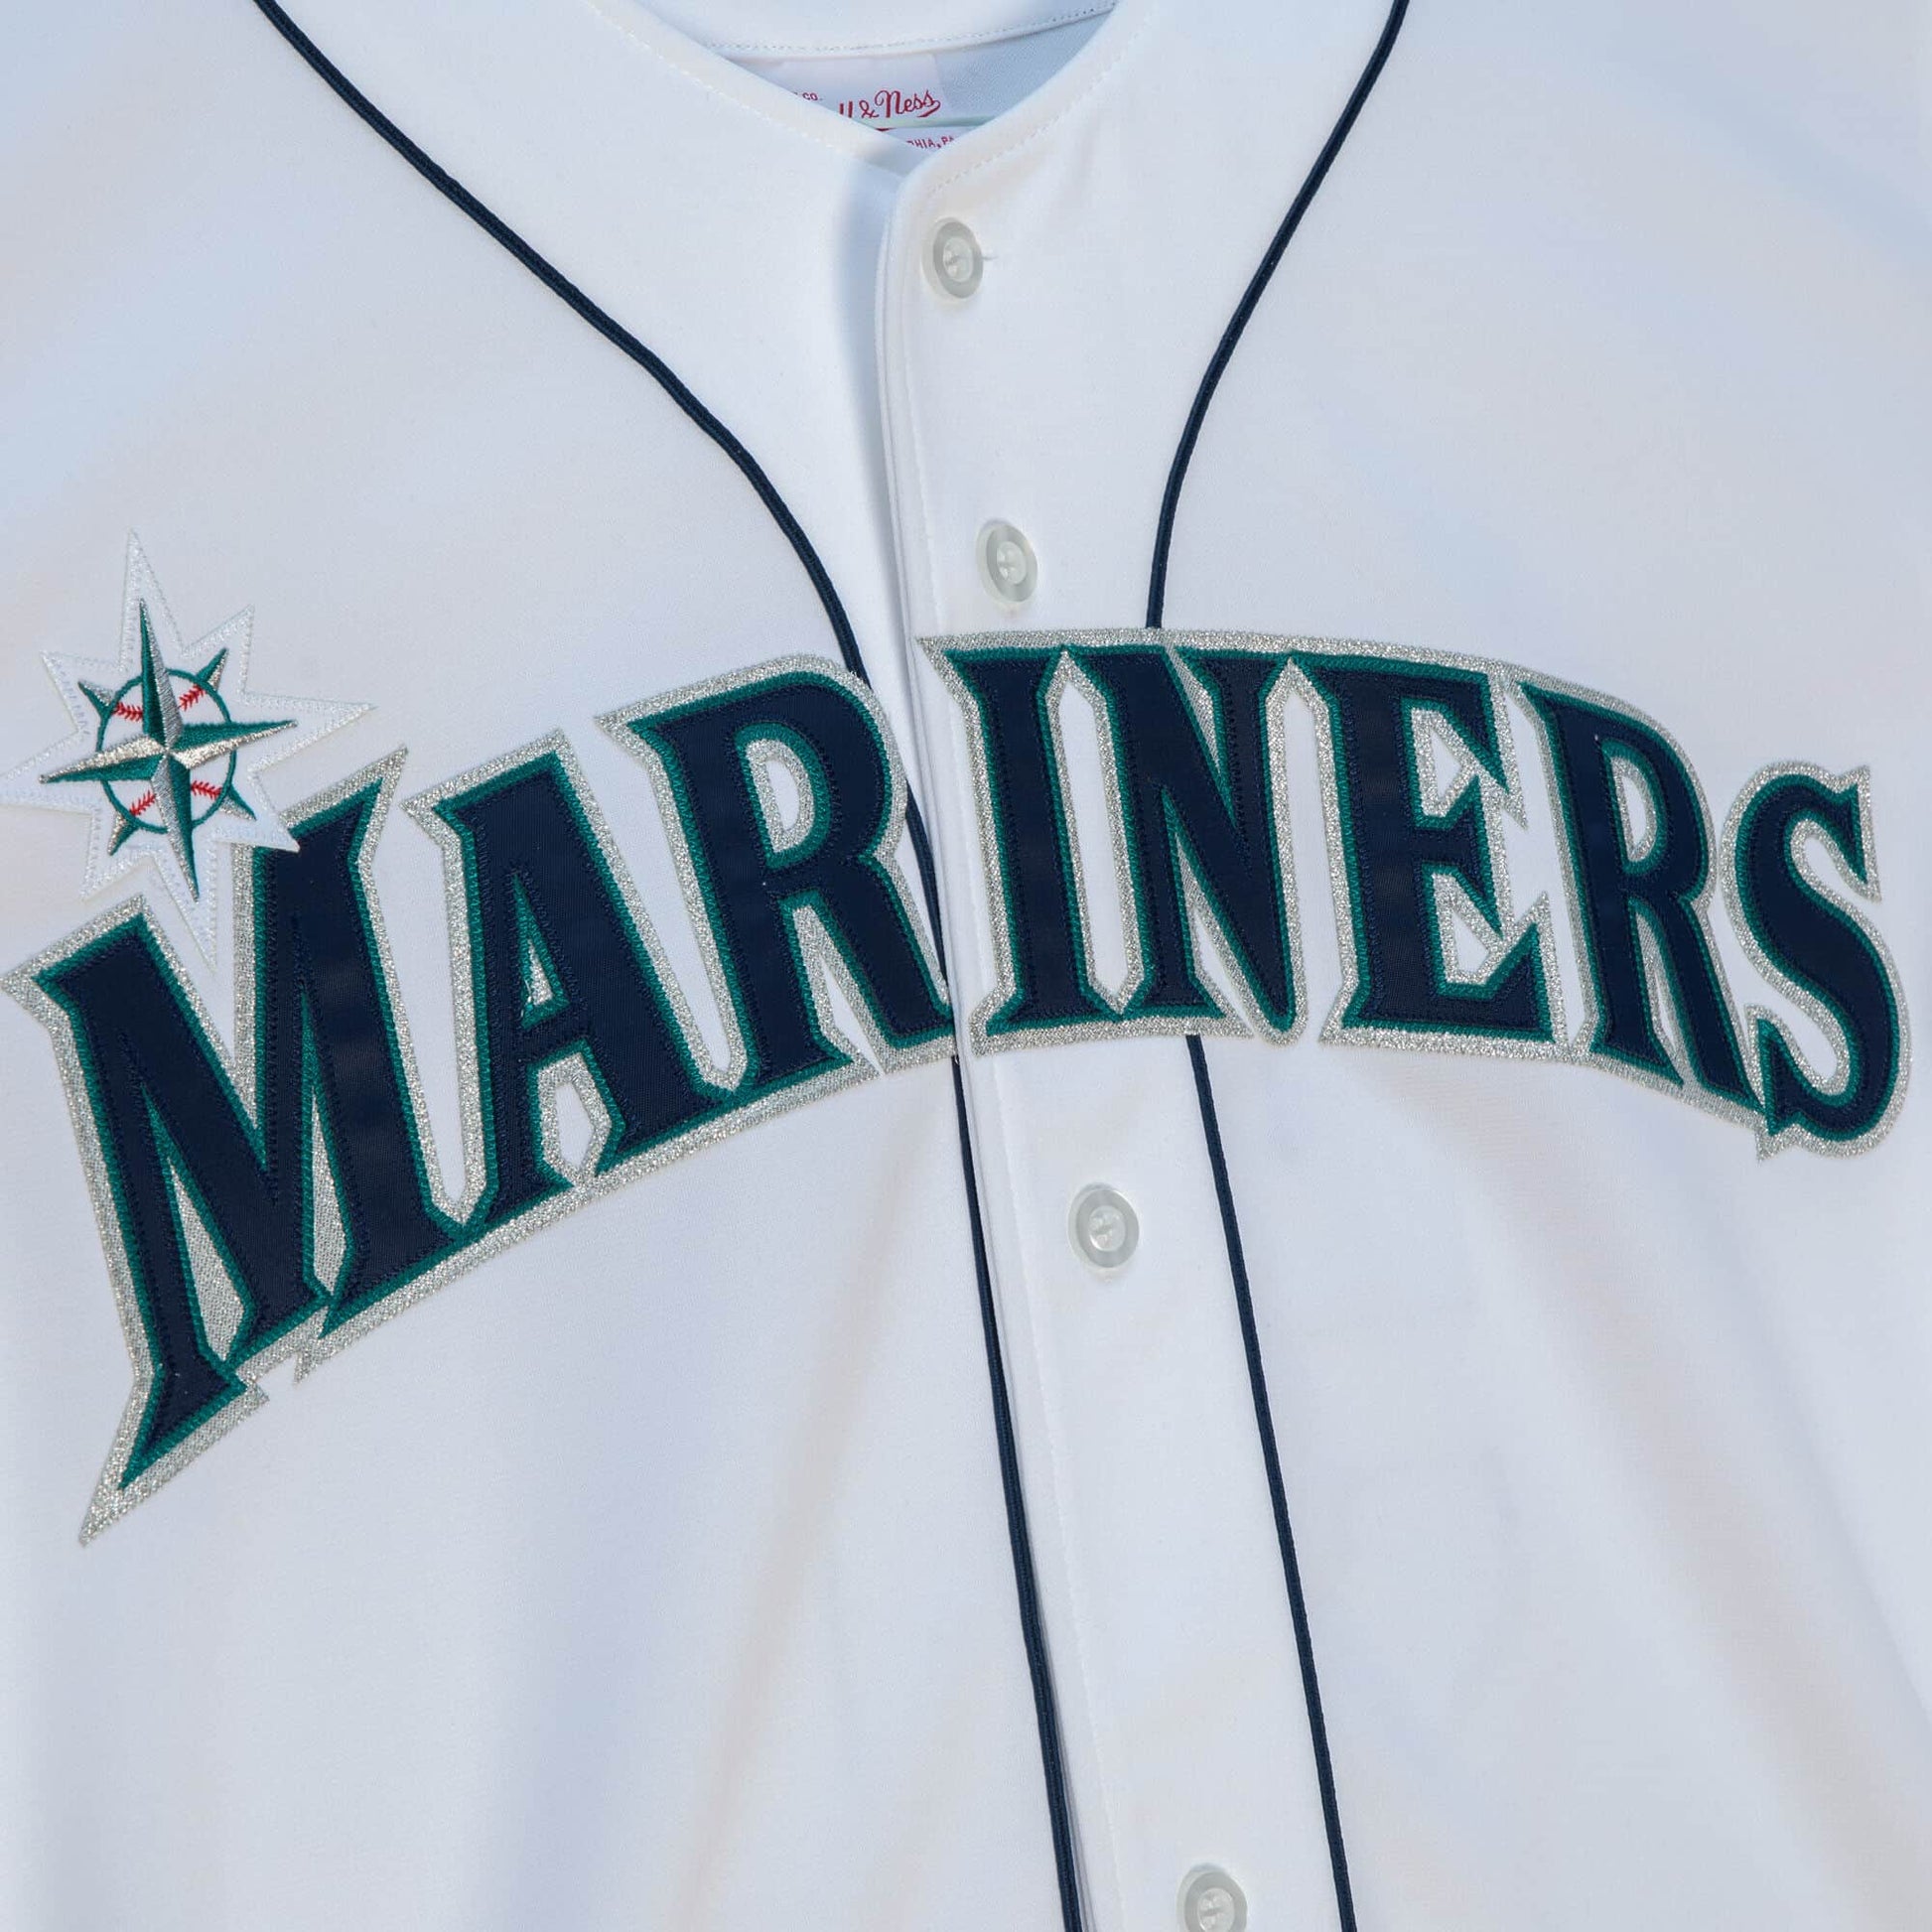 ichiro seattle mariners jersey